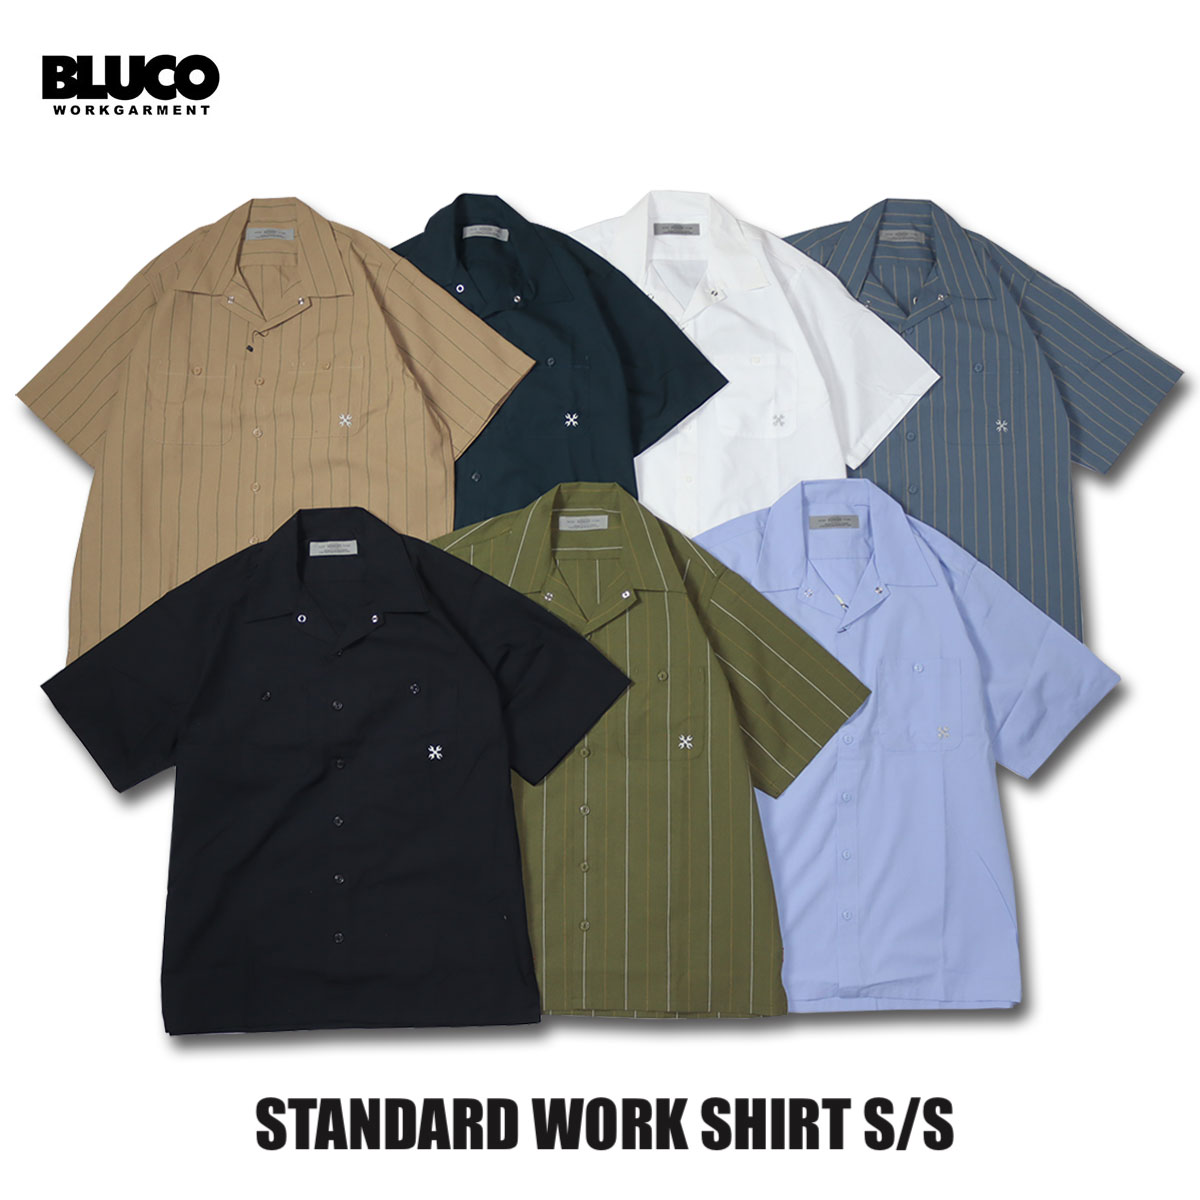 送料無料 BLUCO(ブルコ)OL-108-023 STANDARD WORK SHIRT S/S 7色(NVY/BLK/L.BLU/WHT/OLV.STP/BEG.STP/S.BLU.STP)